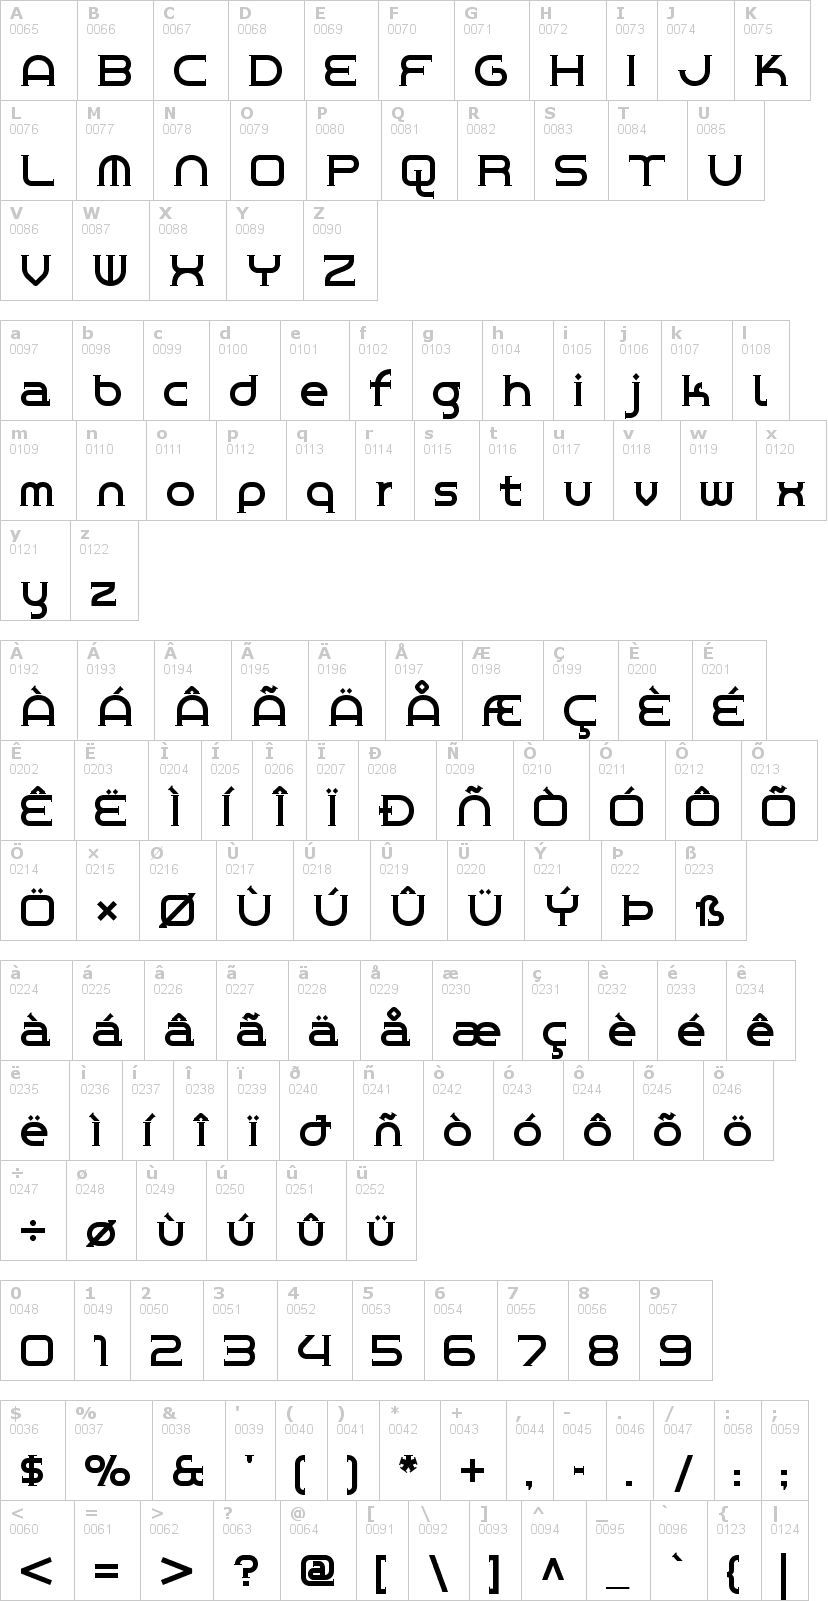 Lettere dell'alfabeto del font chromeyellow con le quali è possibile realizzare adesivi prespaziati